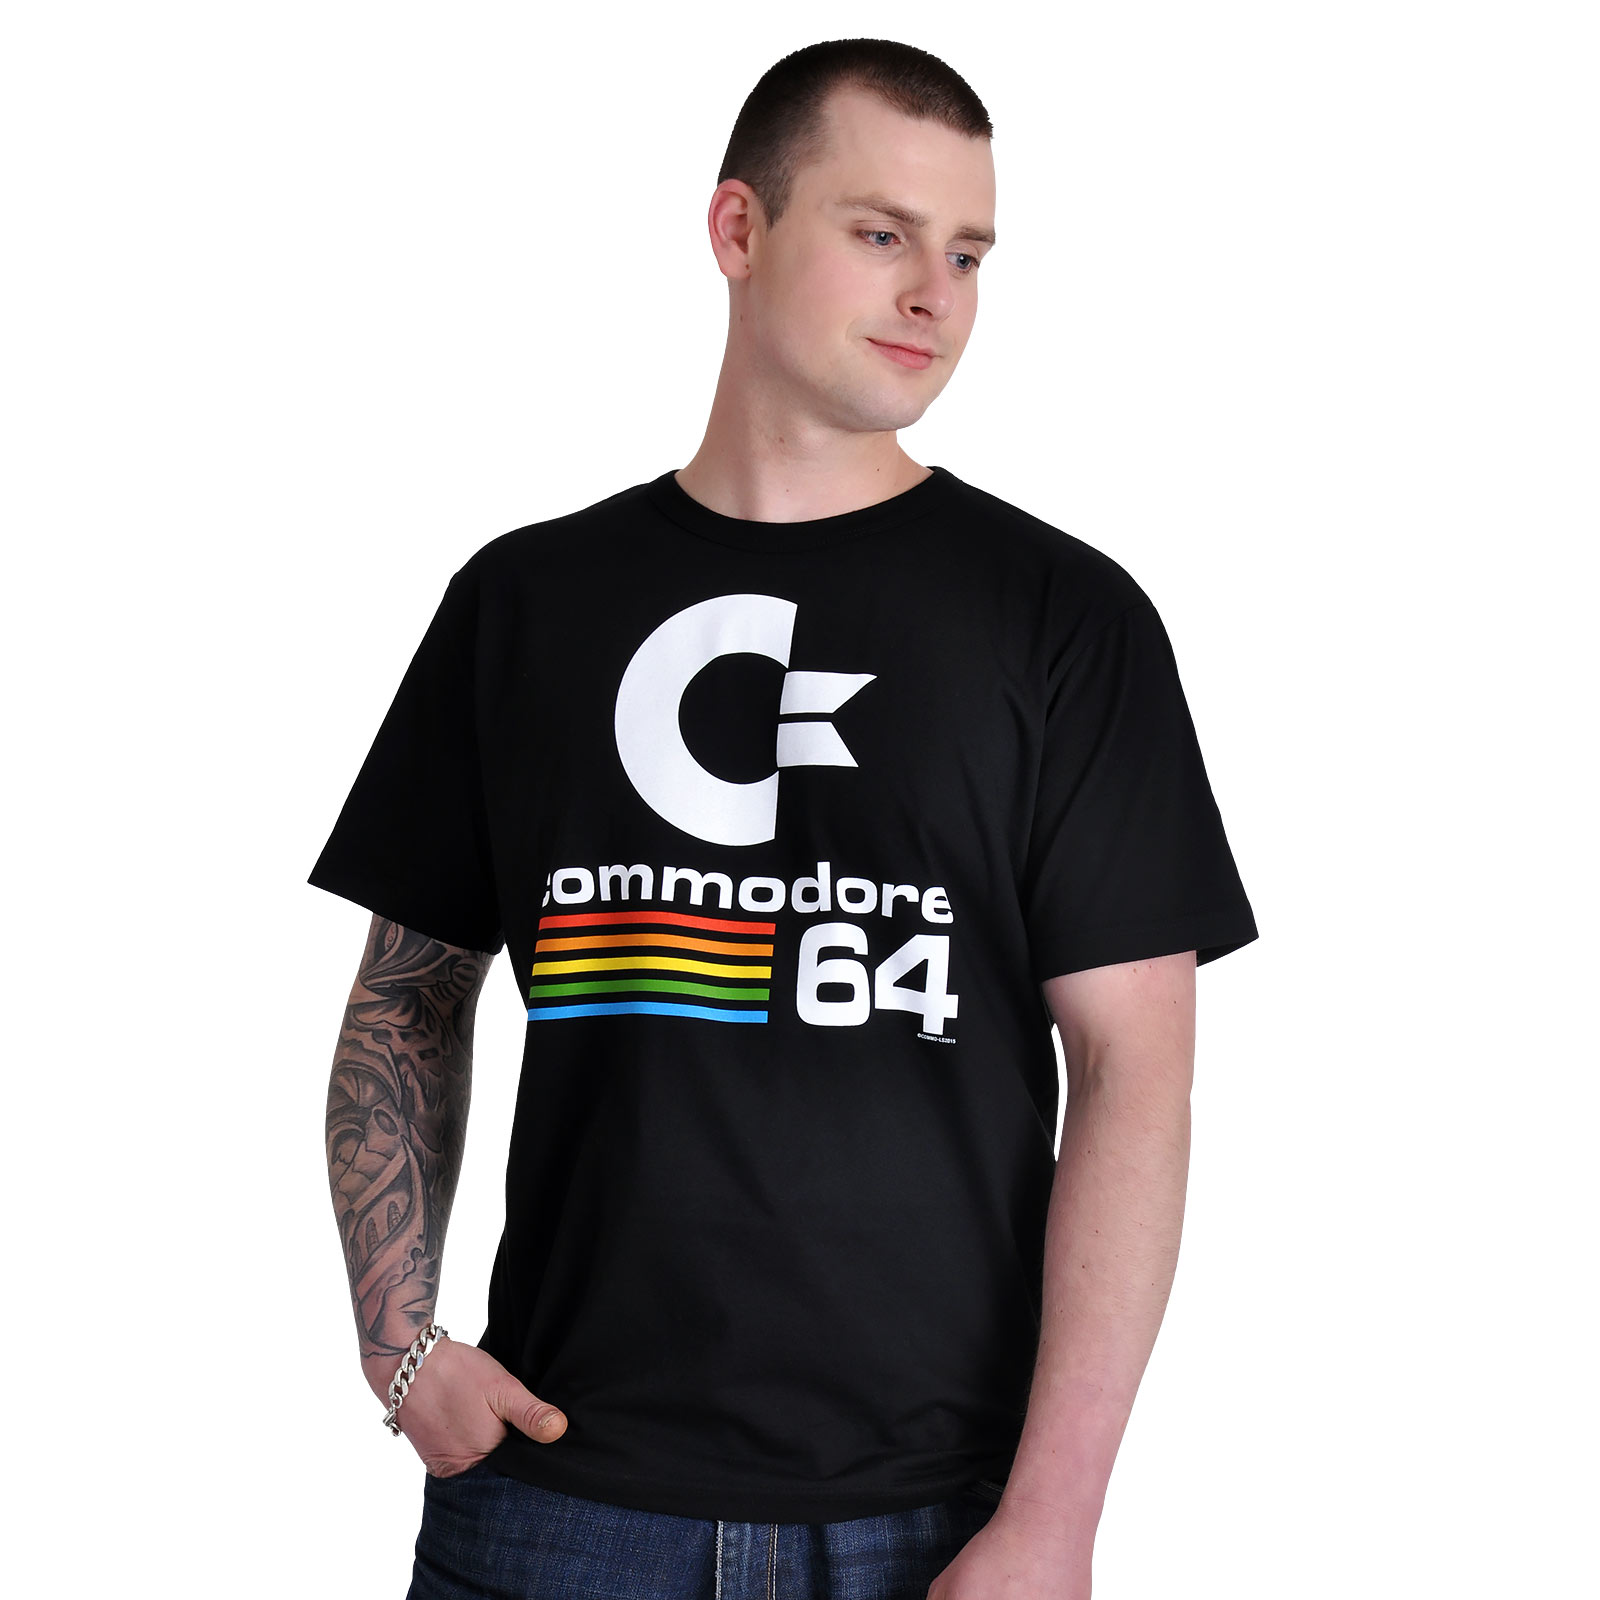 Commodore 64 - T-shirt logo noir